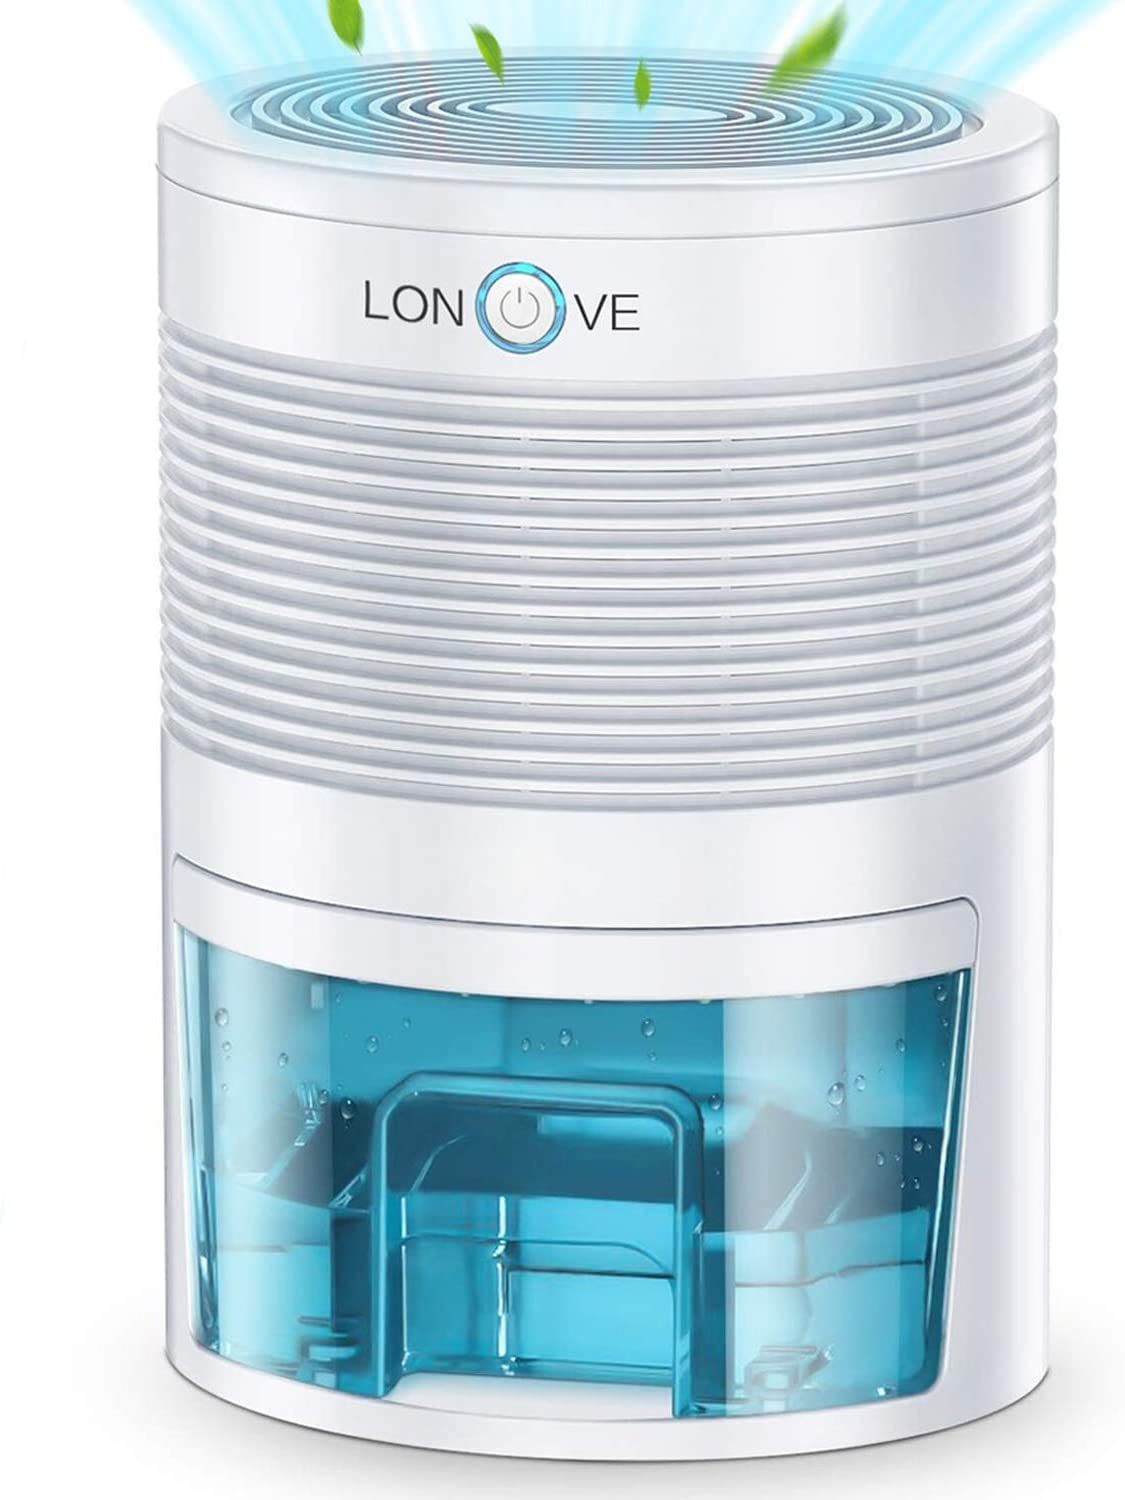 best-dehumidifiers-home-lonove-165-sq-ft-dehumidifier-pros-cons